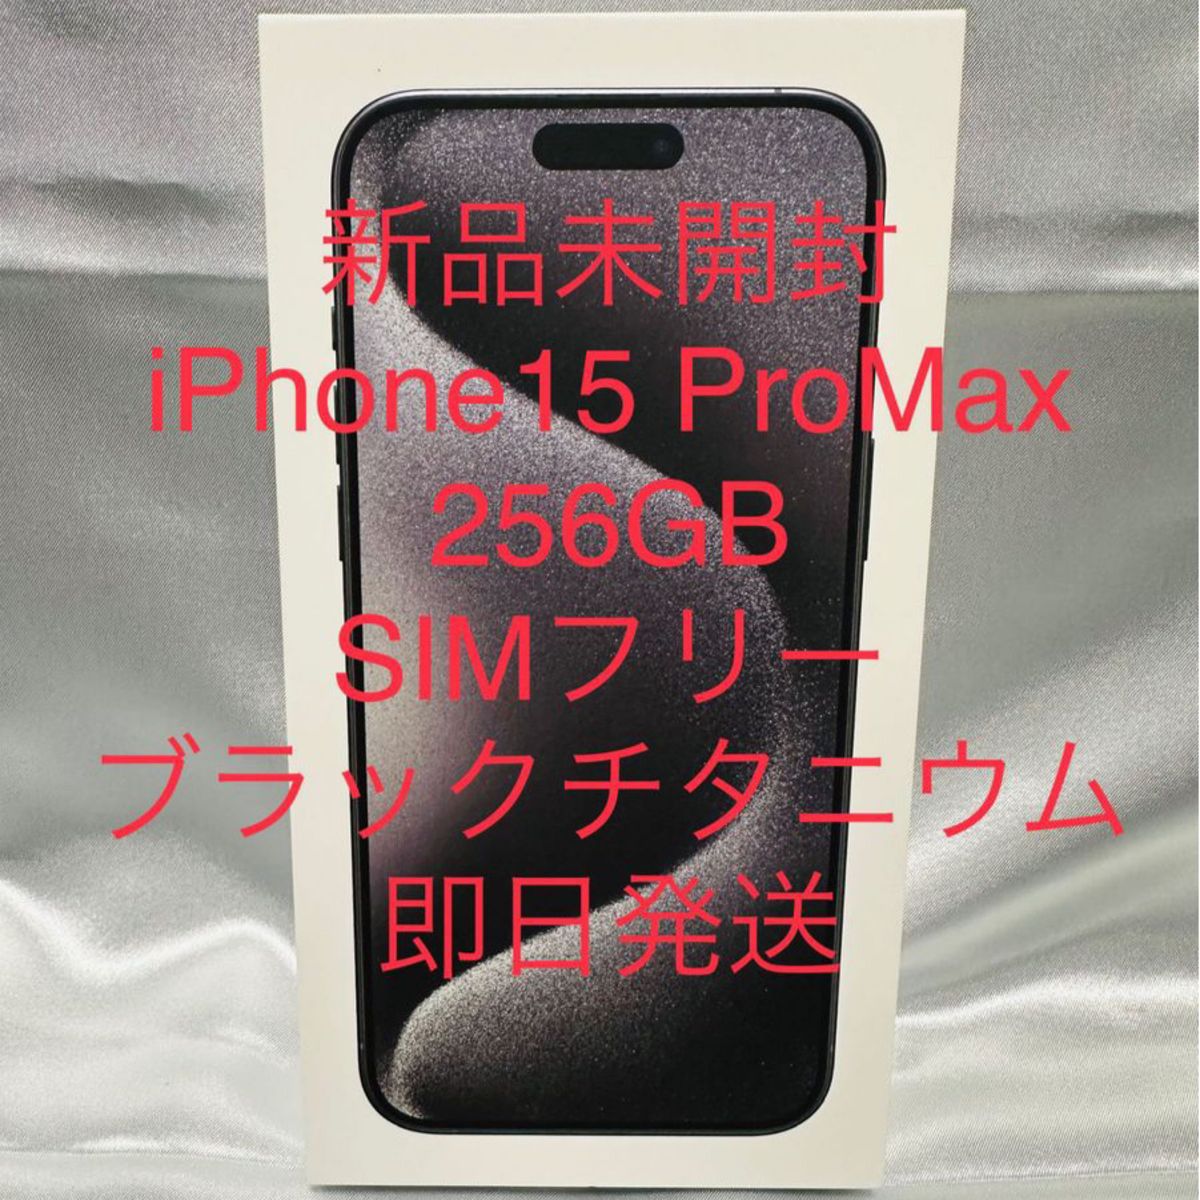 新品未開封 iPhone 15 Pro Max ブラックチタニウム 256GB SIMフリー